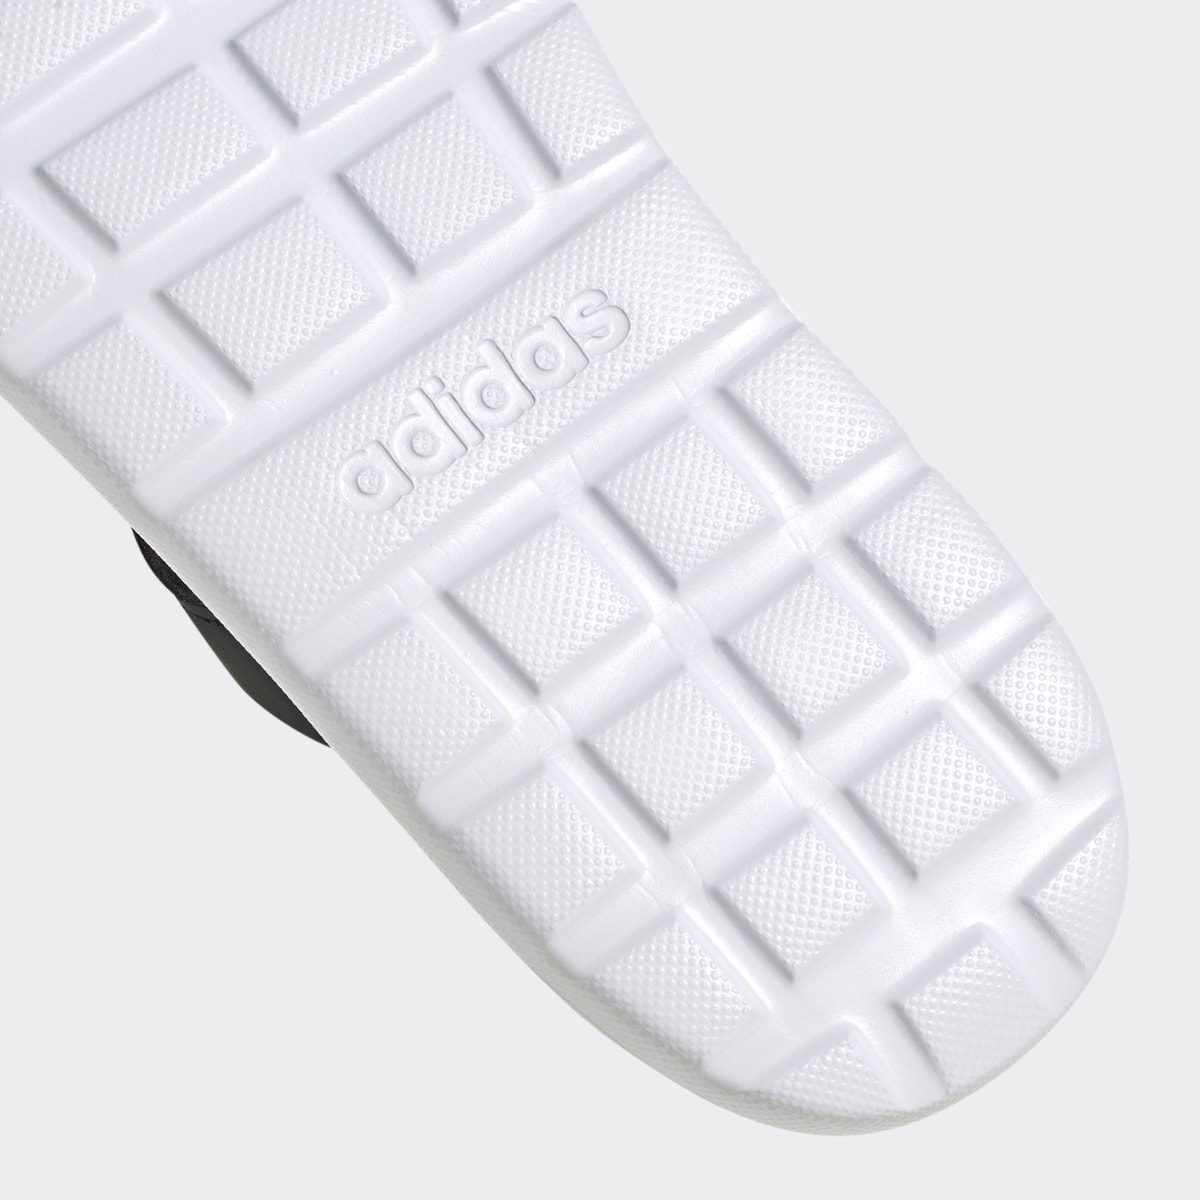 Adidas Comfort Flip-Flops. 10